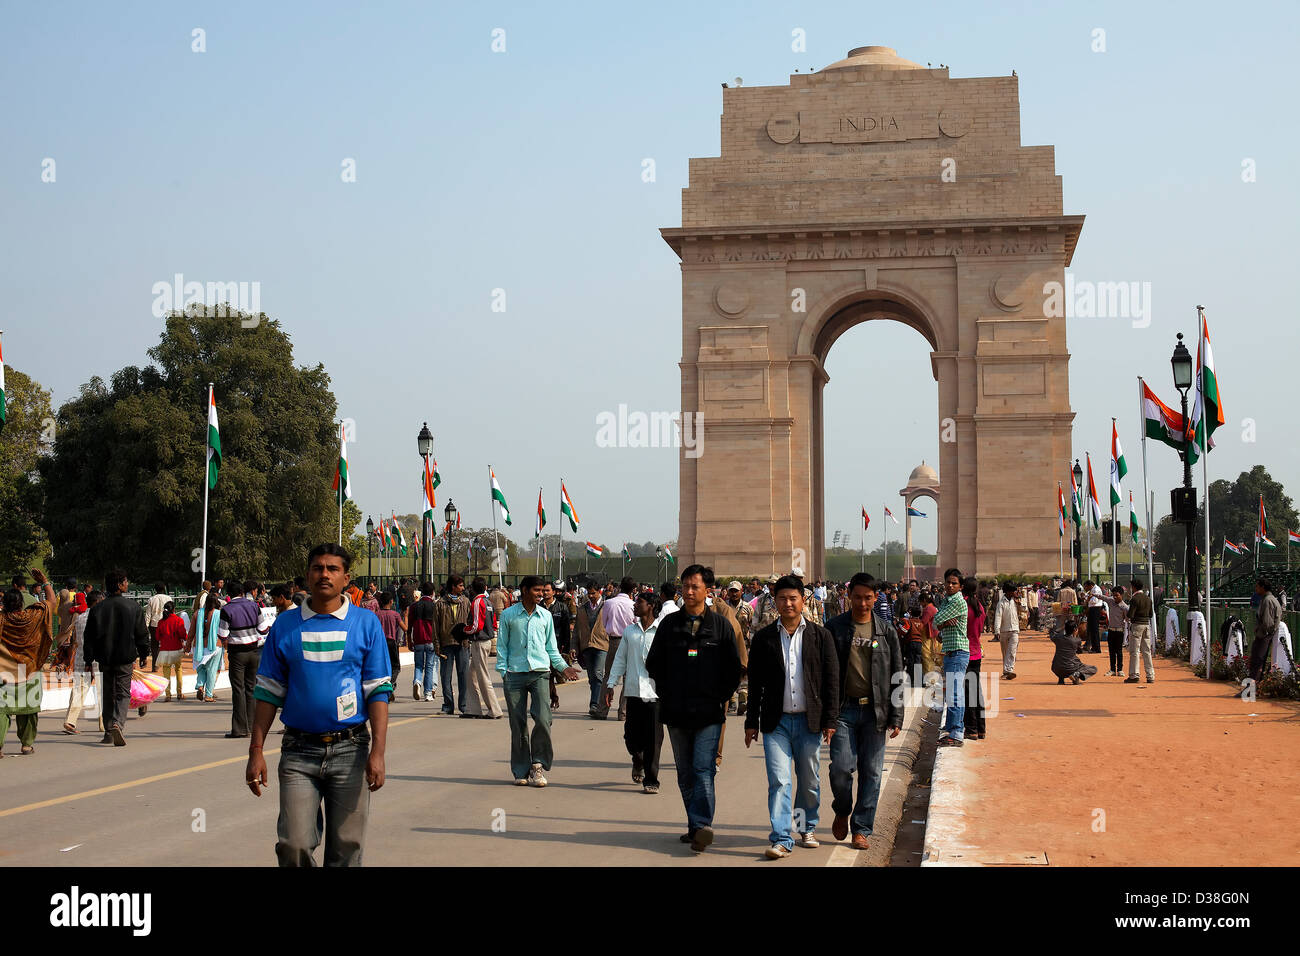 India Gate,Persone,War Memorial,le destinazioni di viaggio,monumento,architettura e costruzioni, corsa,città capitali,città, arenaria Foto Stock